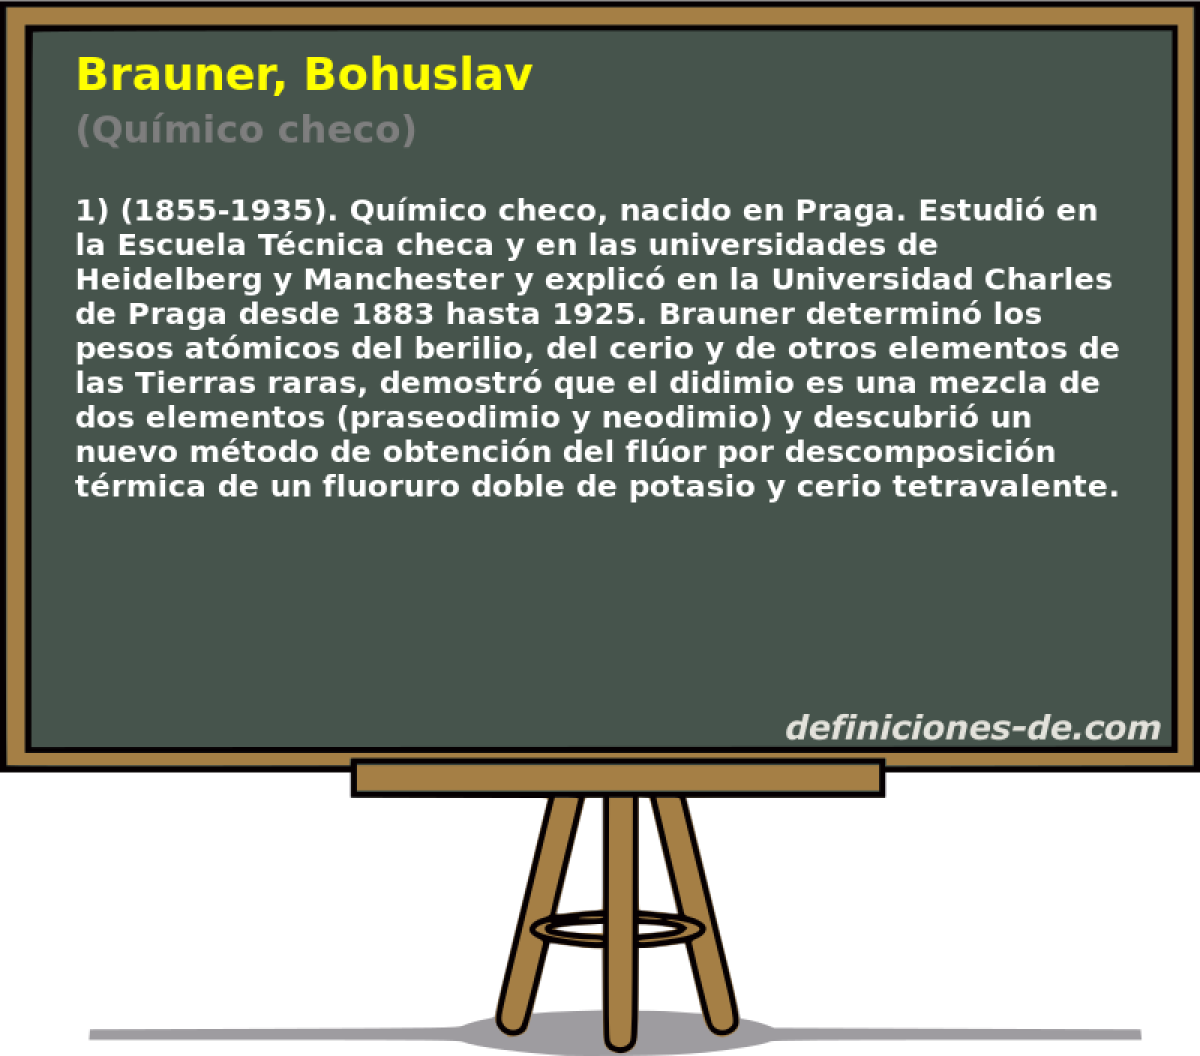 Brauner, Bohuslav (Qumico checo)